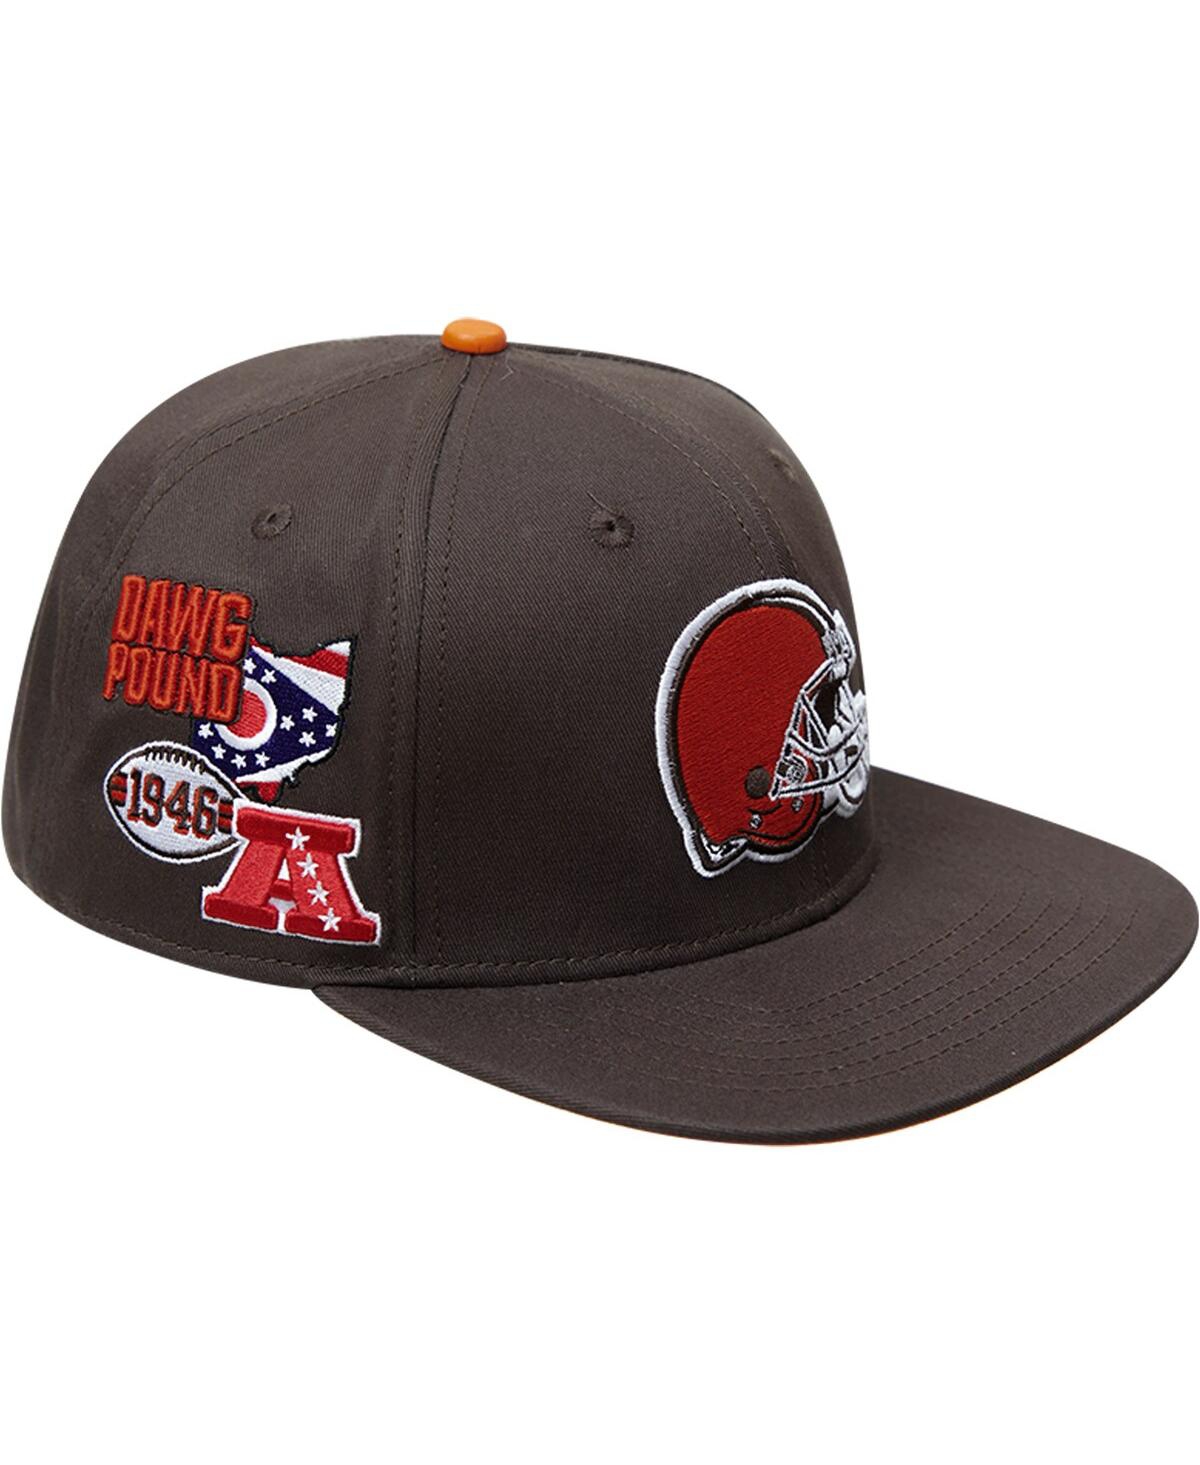 Shop Pro Standard Men's  Brown Cleveland Browns Hometown Snapback Hat